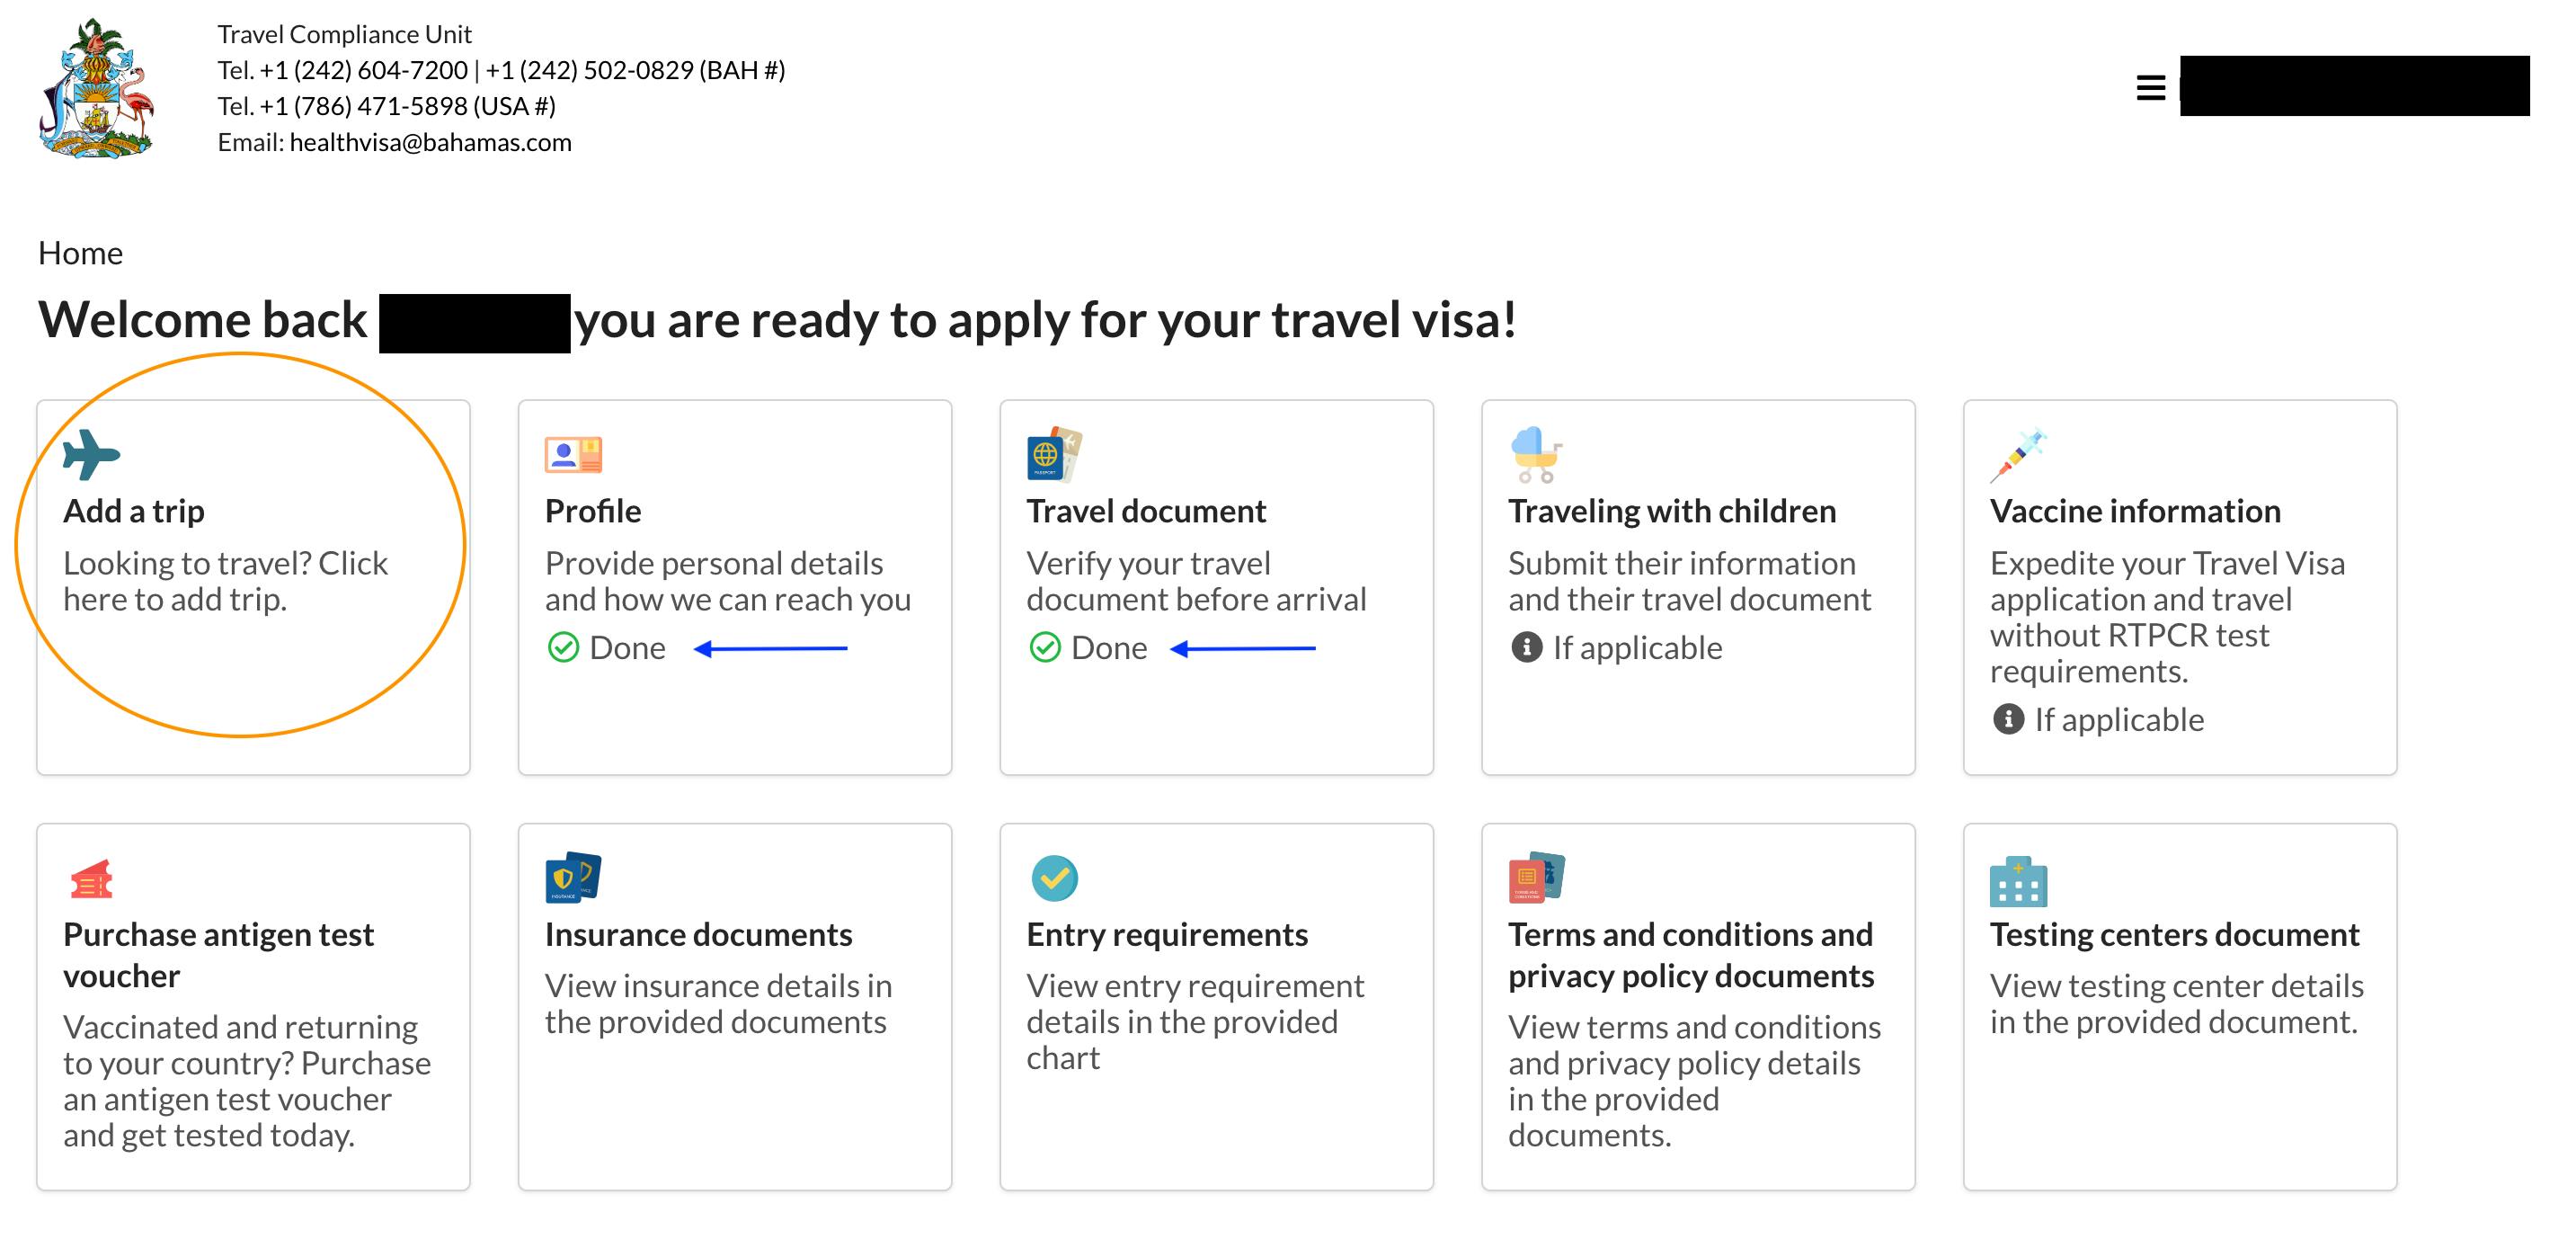 travel health visa bahamas login